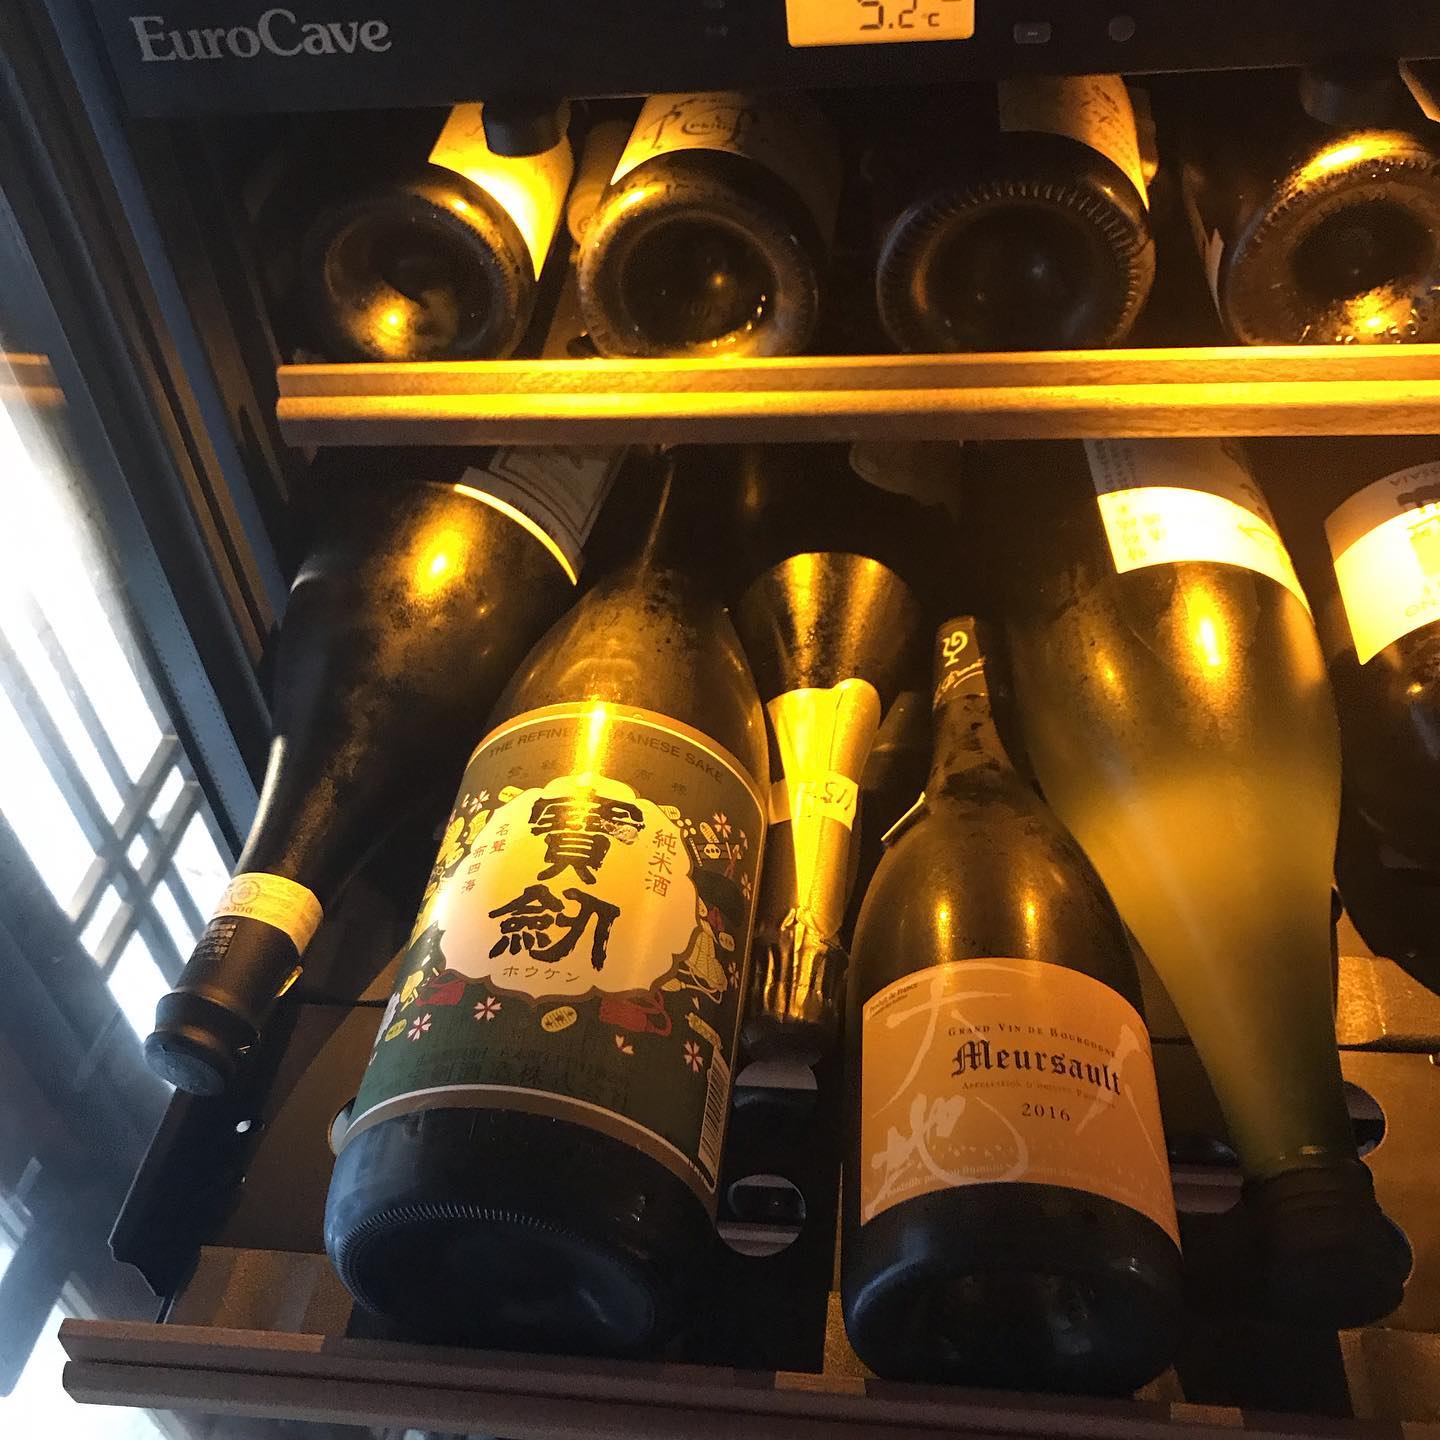 日本酒もセラーで保存しています。宝剣のレトロラベル@広島は最近のお気に入り。エチケットからの印象をいい意味で裏切られるフルーティさが魅力的です。#イルフェソワフ #ワイン#日本酒 #薬院#警固